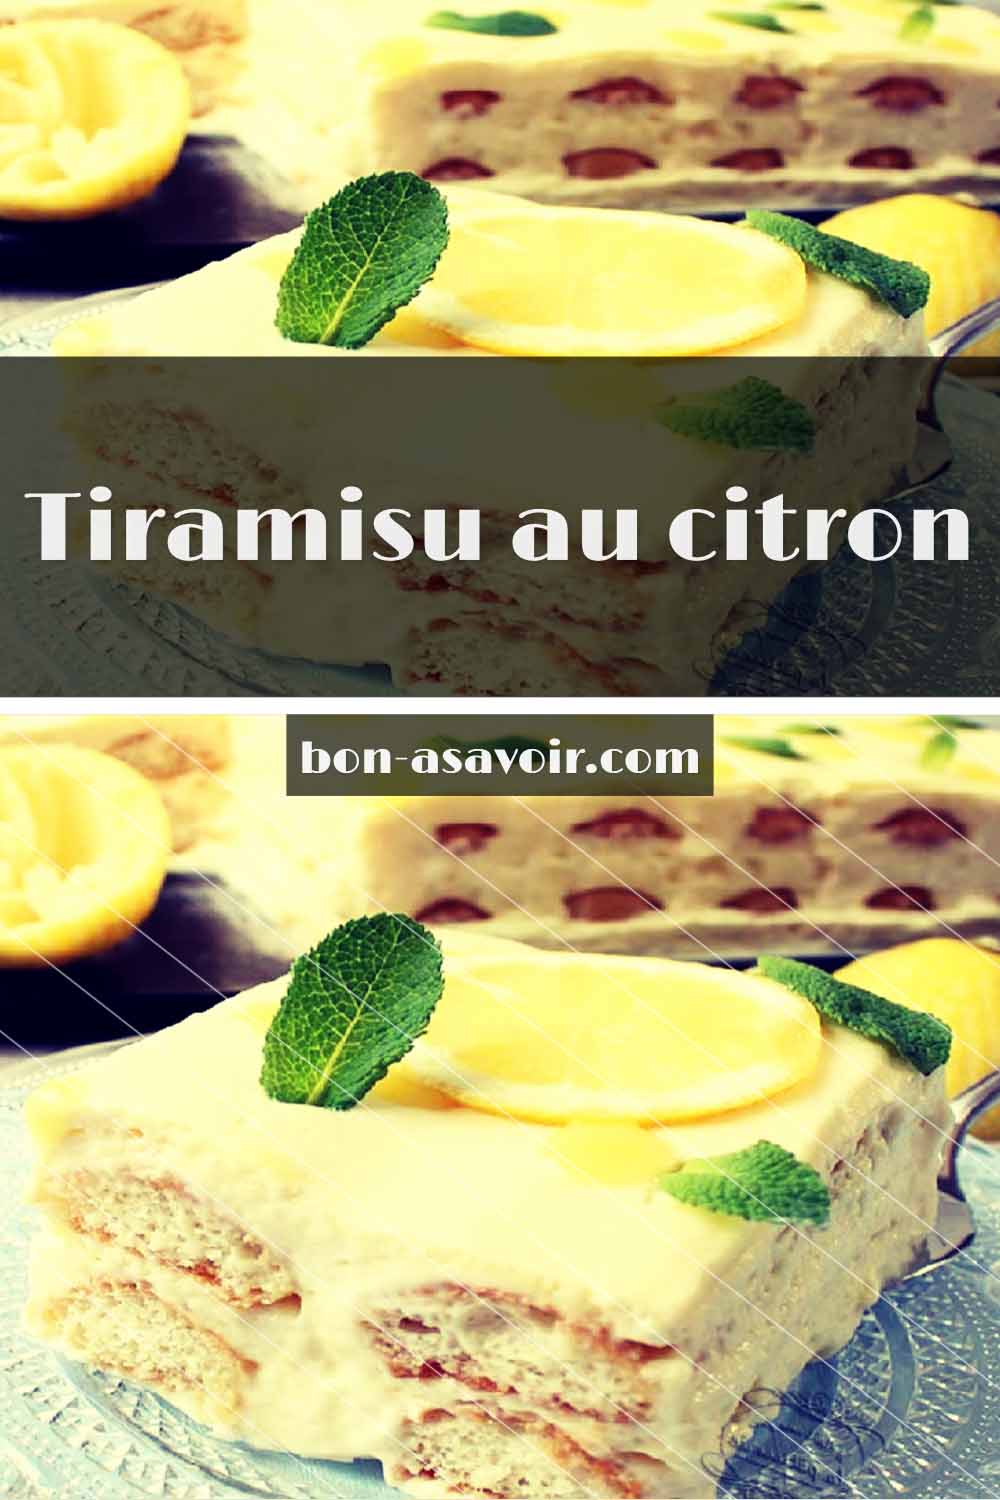 Tiramisu au citron